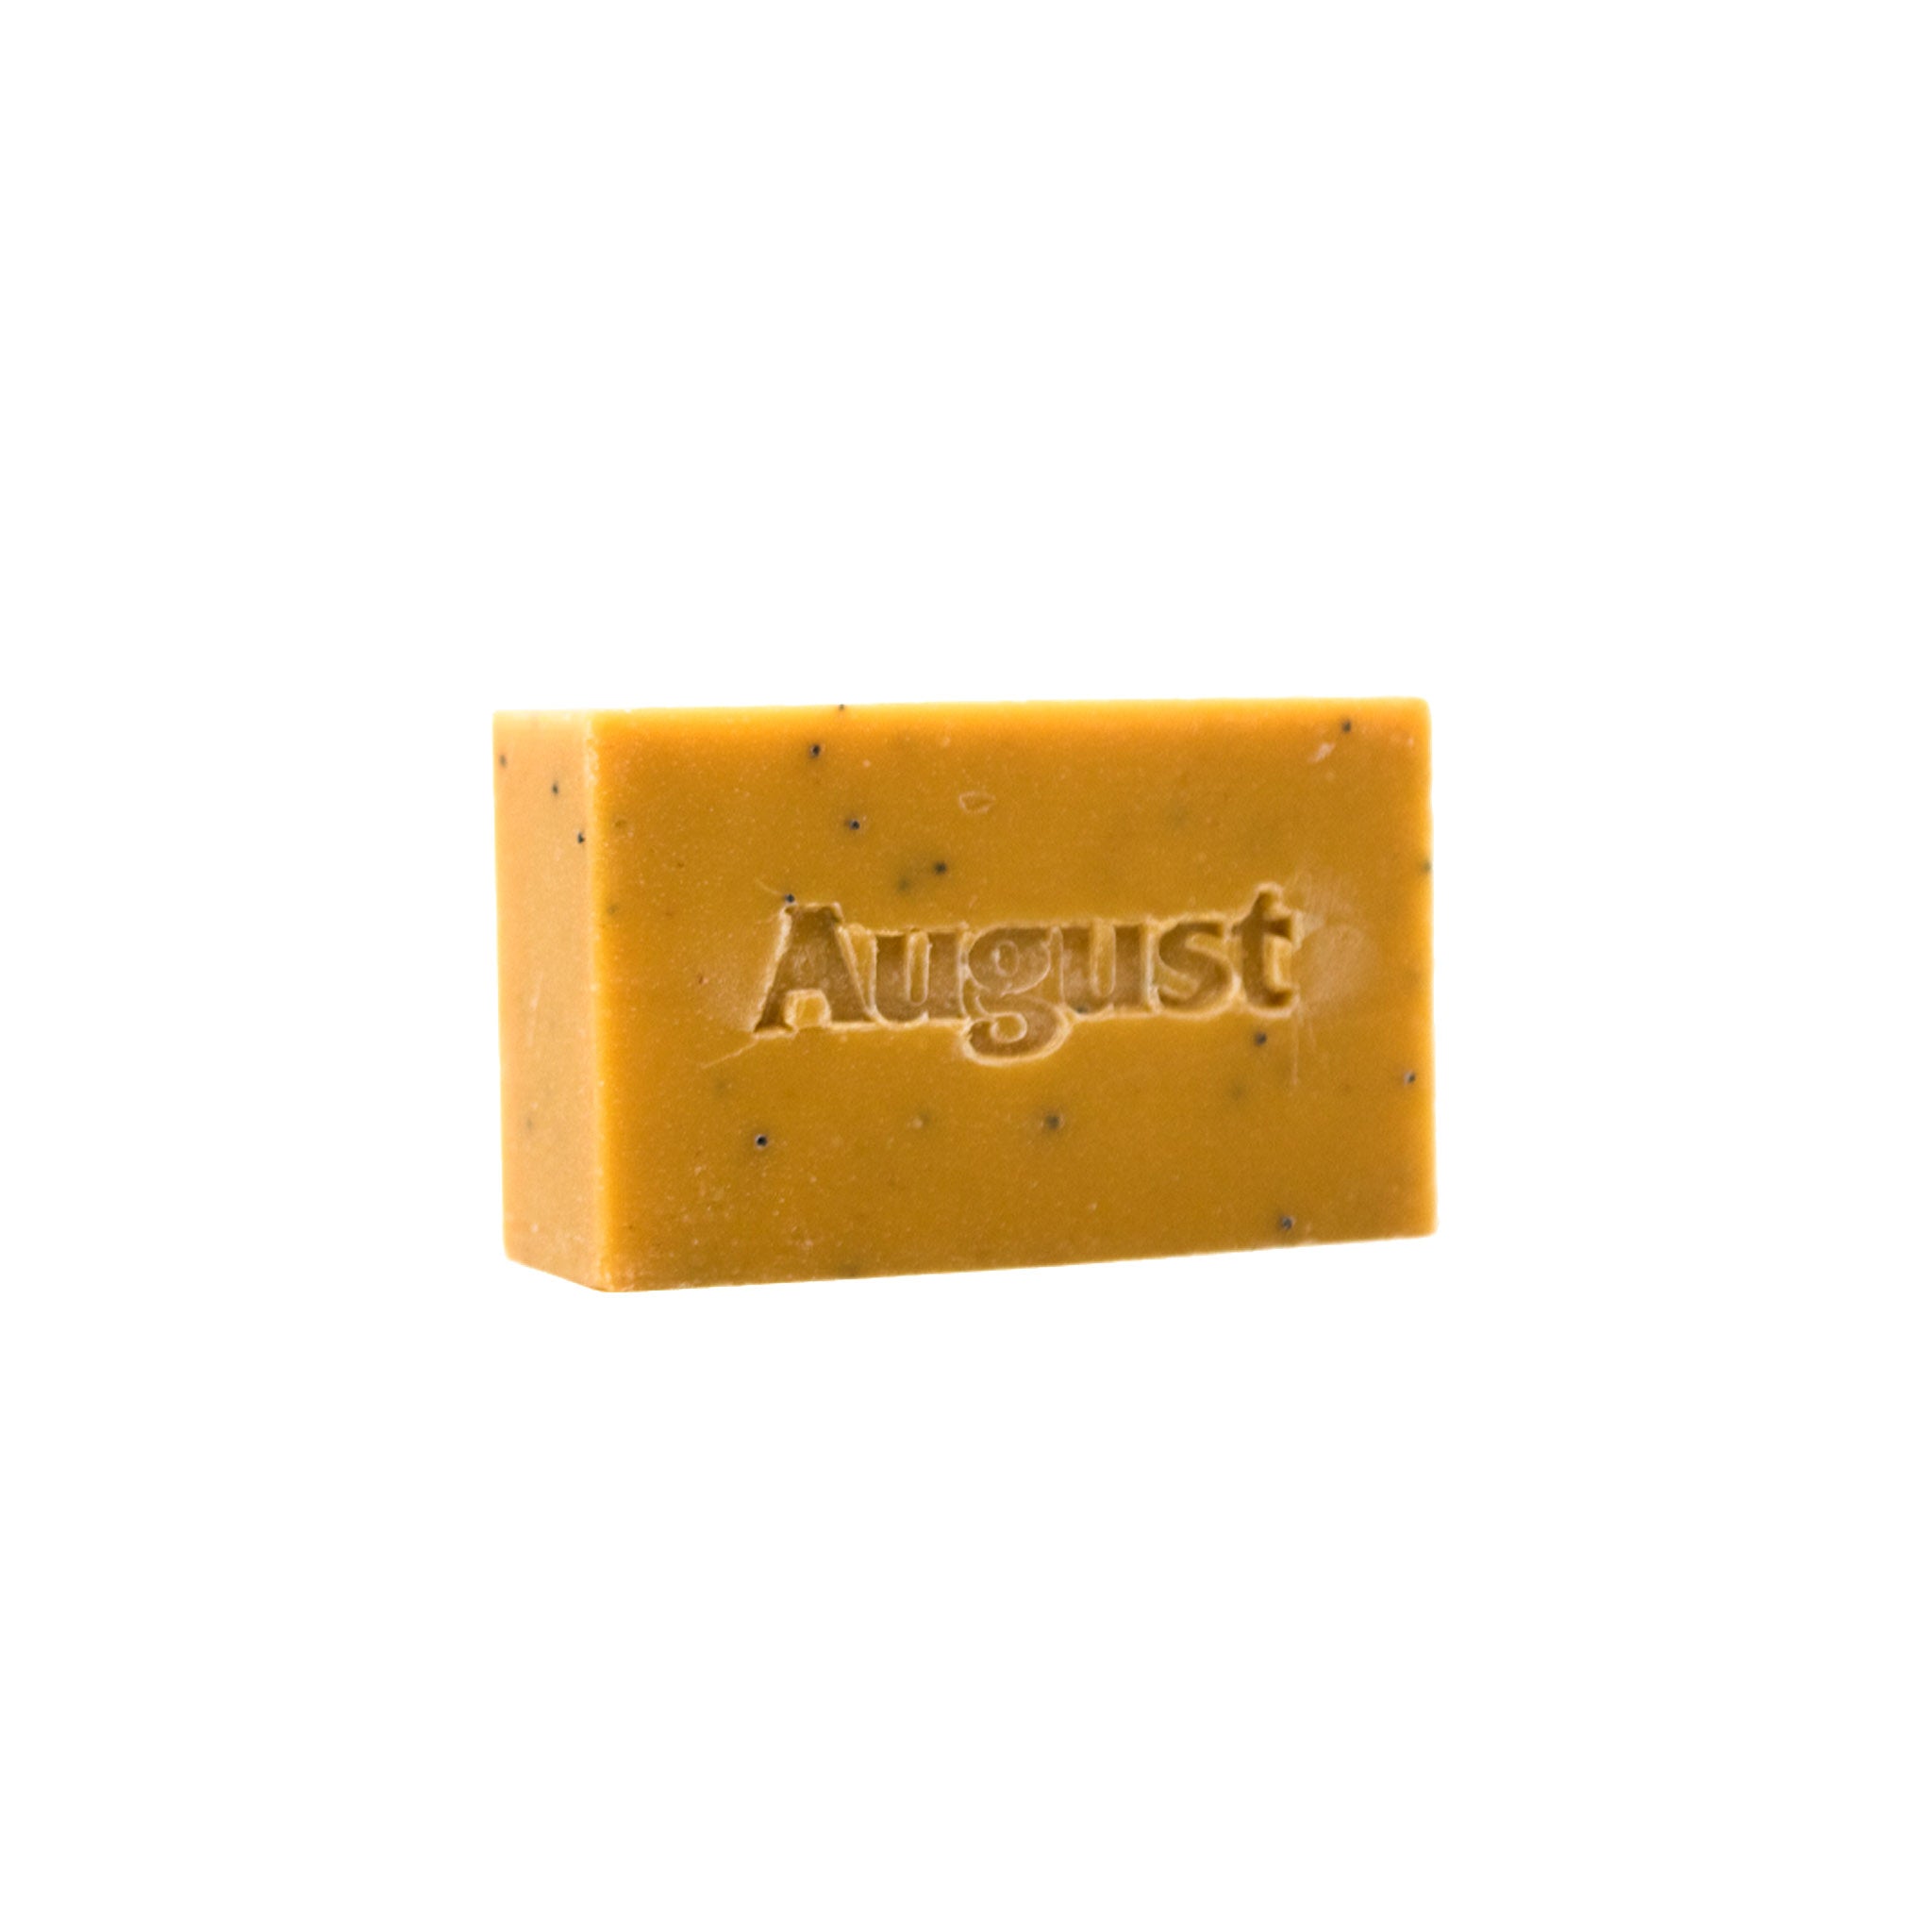 August &quot;Lemon Poppy&quot; Organic Bar Soap - August Shop